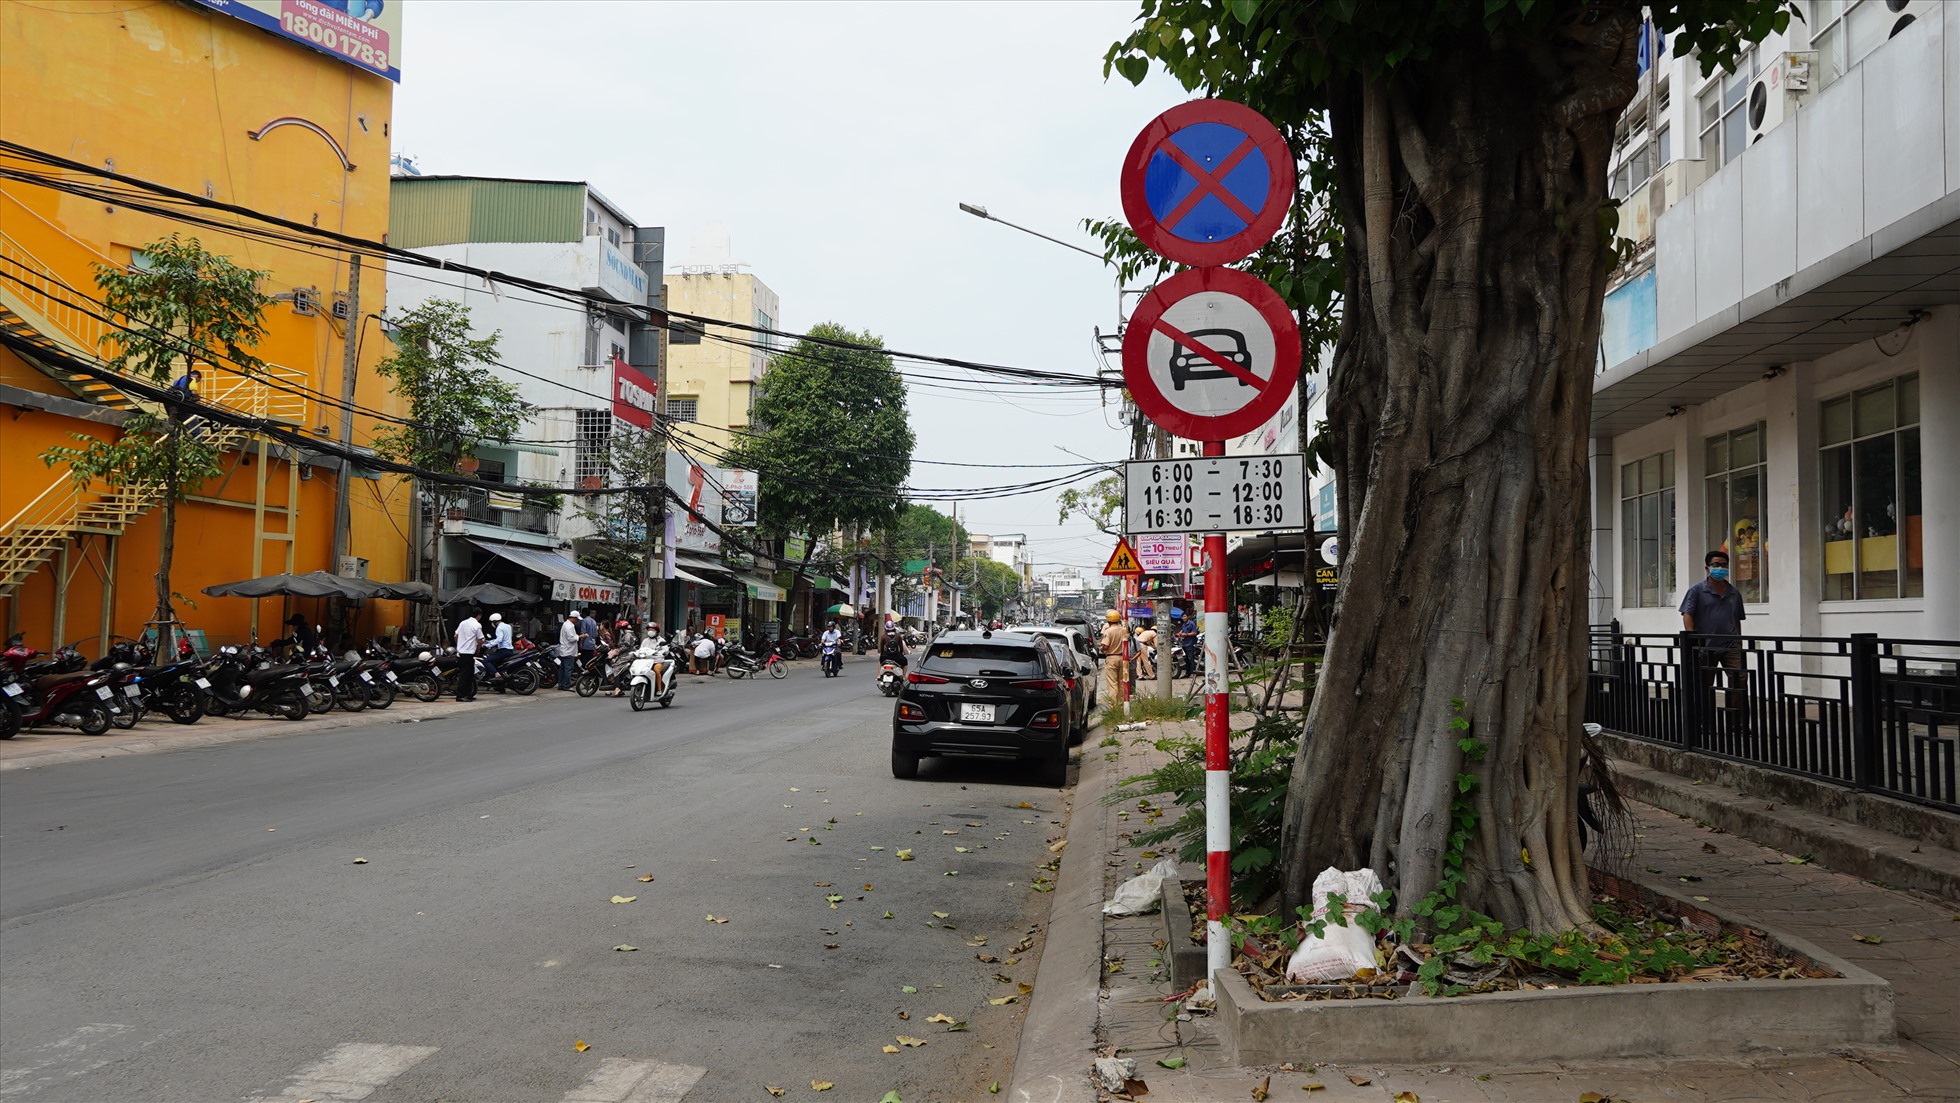 Ghi nhận của Lao Động, từ 11h – 12h ngày 6.3, hàng chục chiếc xe ô tô đi vào đường cấm giờ cao điểm, đậu dưới biển cấm bị lực lượng CSGT quận Ninh Kiều xử lý.